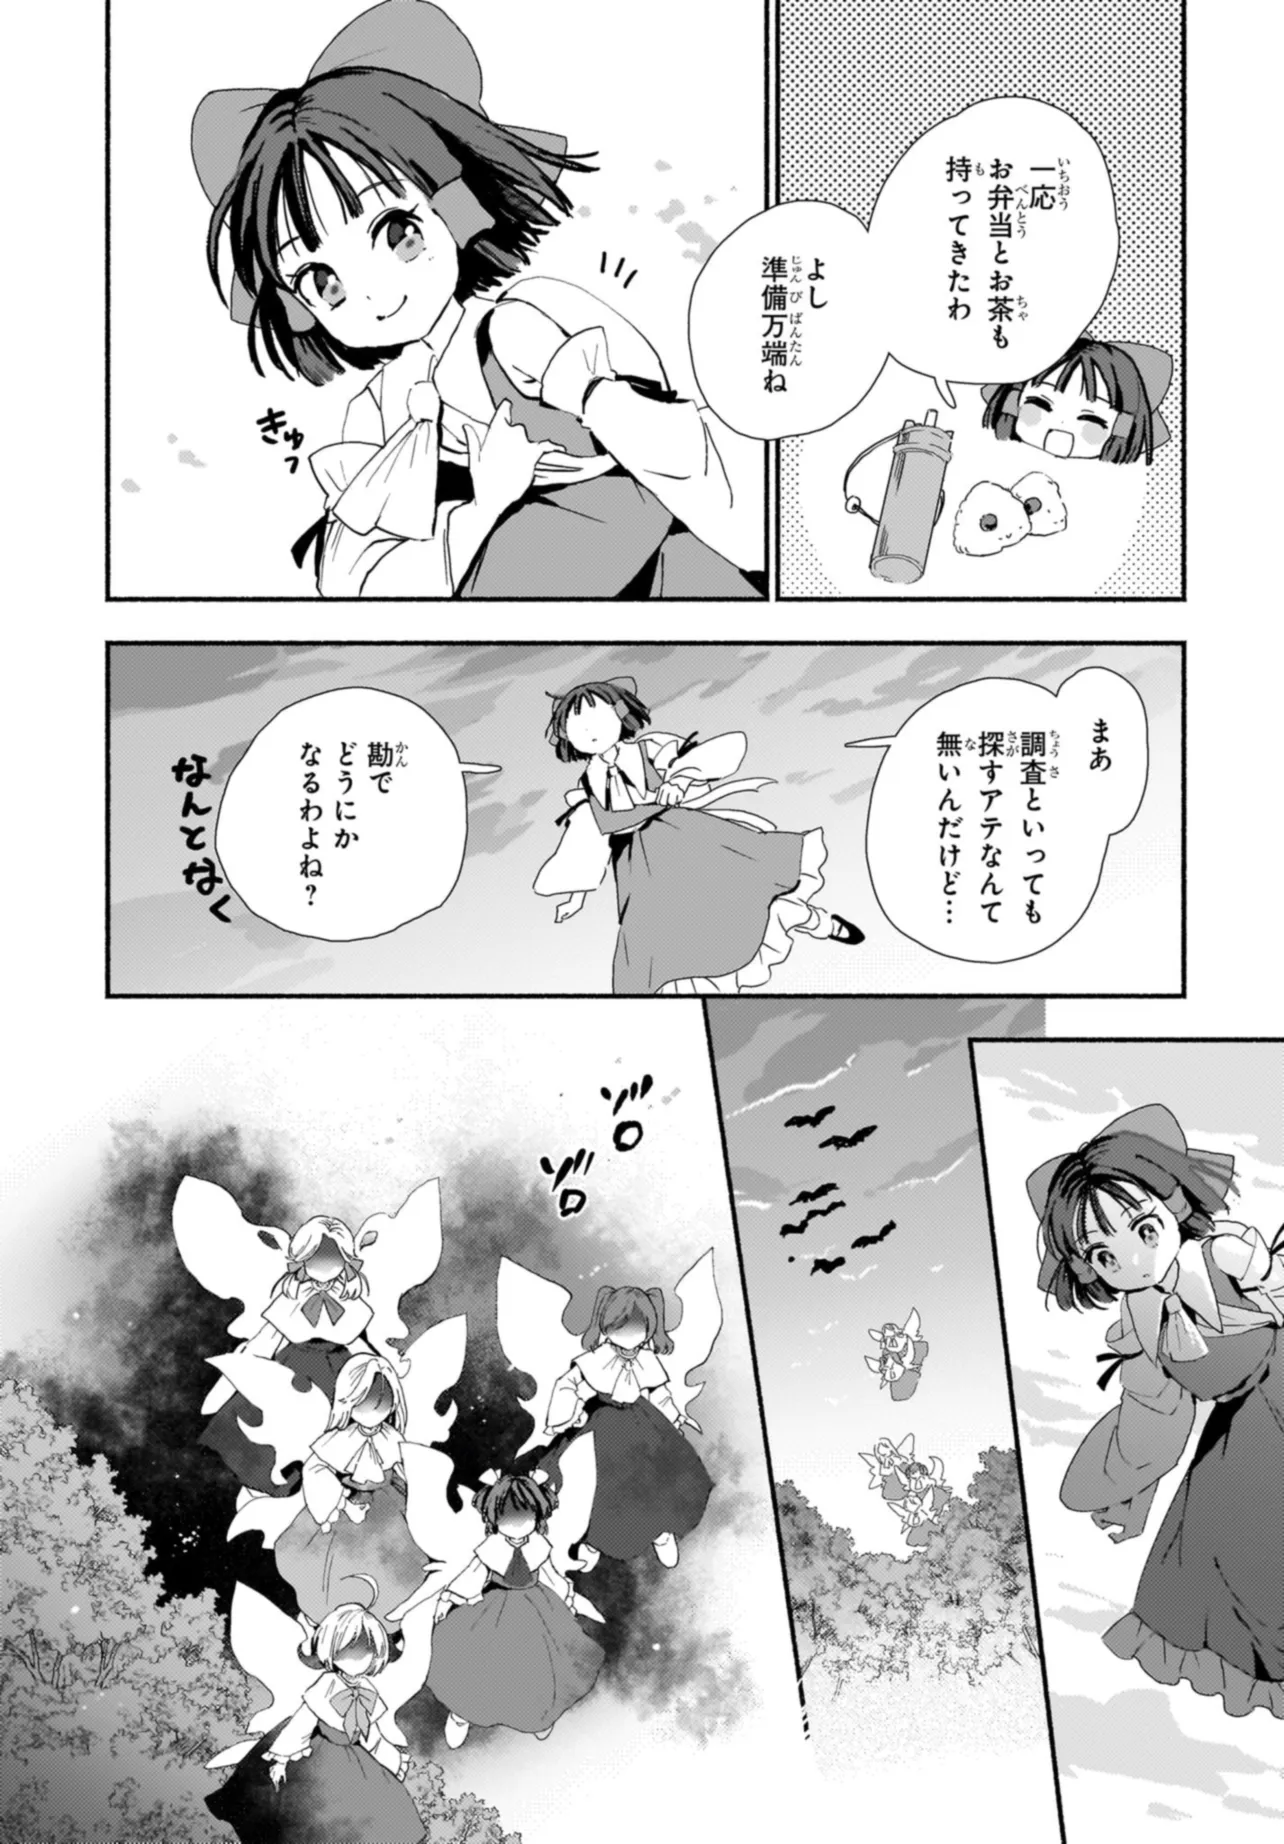 SPELL (AZUMA Aya) - Chapter 1 - Page 22